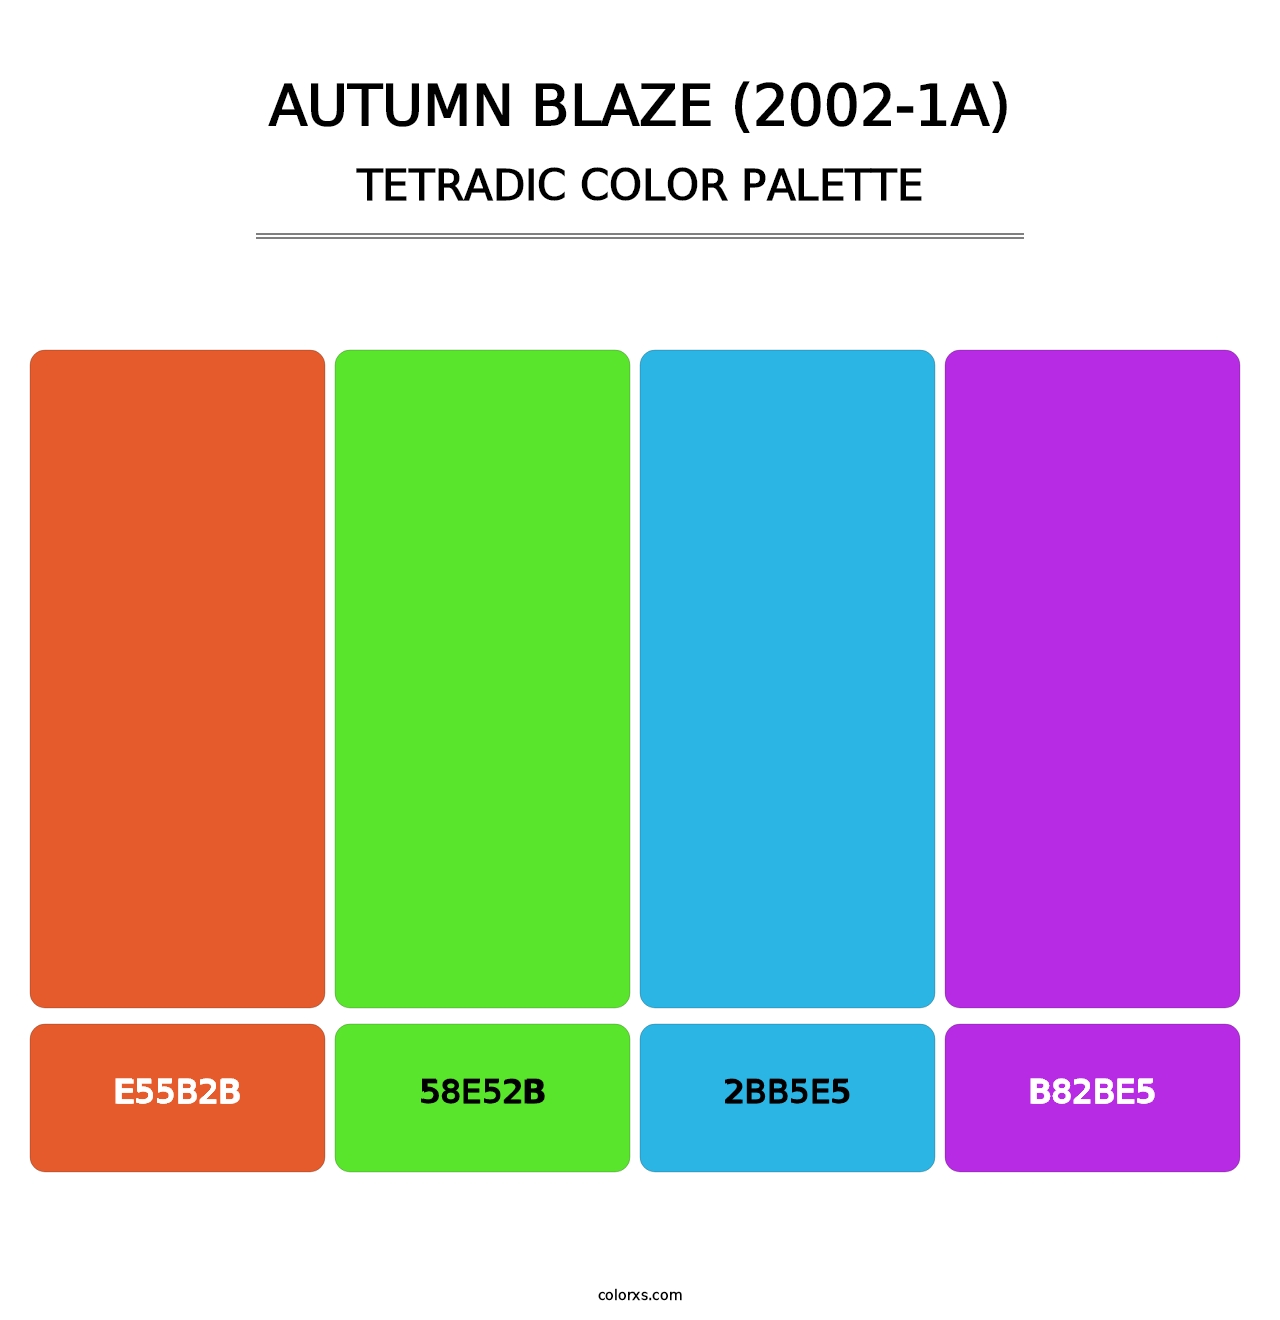 Autumn Blaze (2002-1A) - Tetradic Color Palette